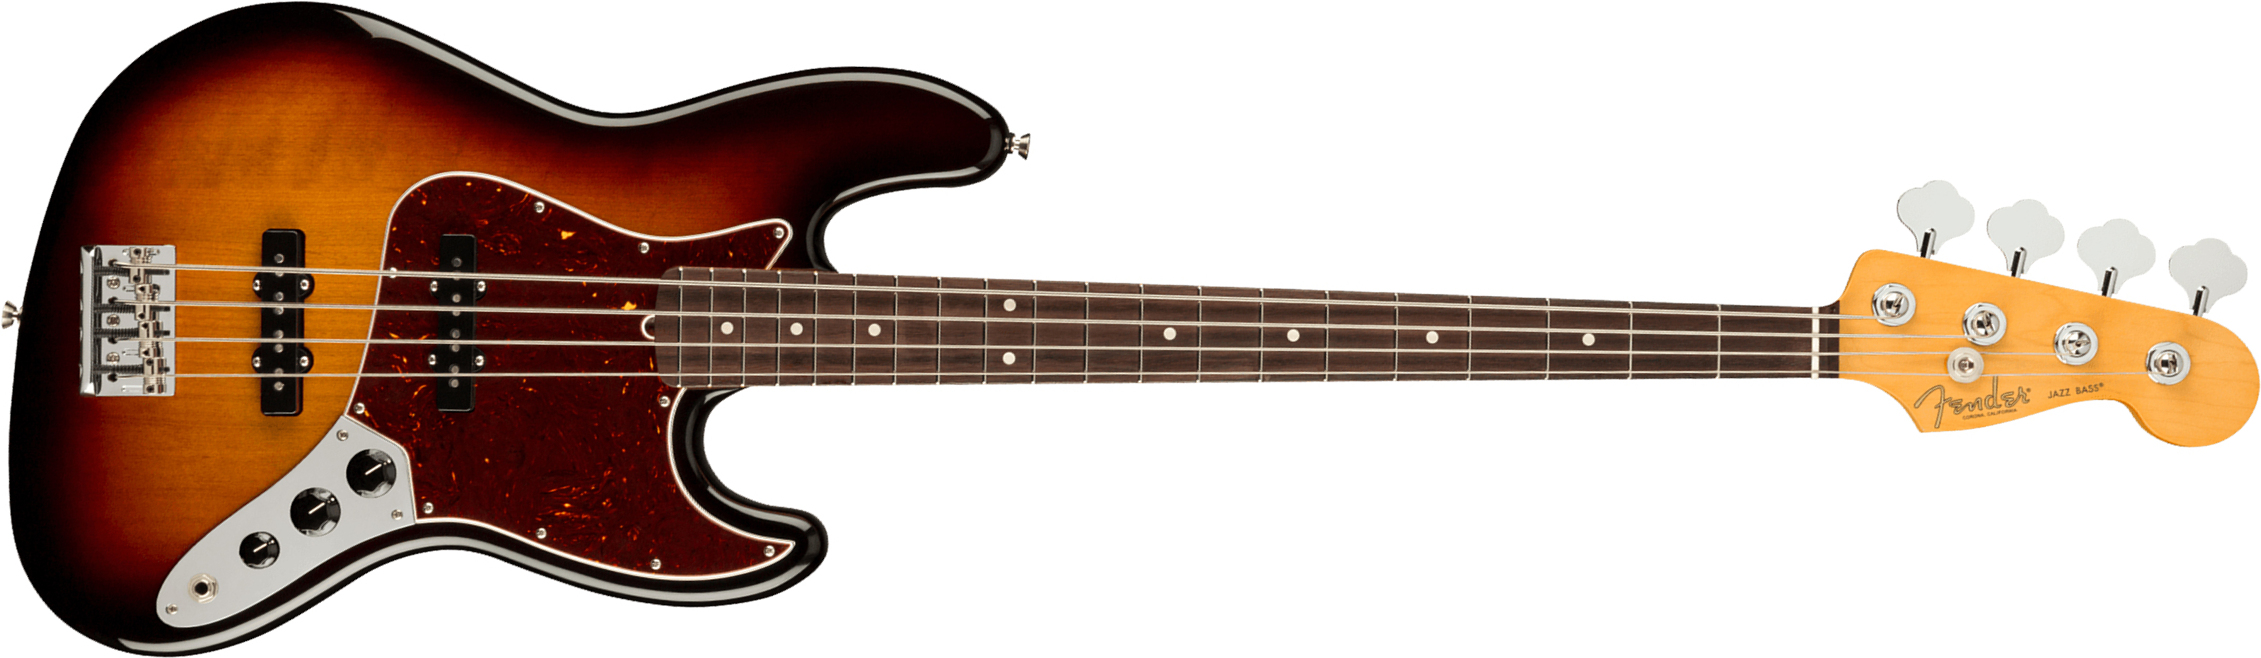 Fender Jazz Bass American Professional Ii Usa Rw - 3-color Sunburst - Bajo eléctrico de cuerpo sólido - Main picture